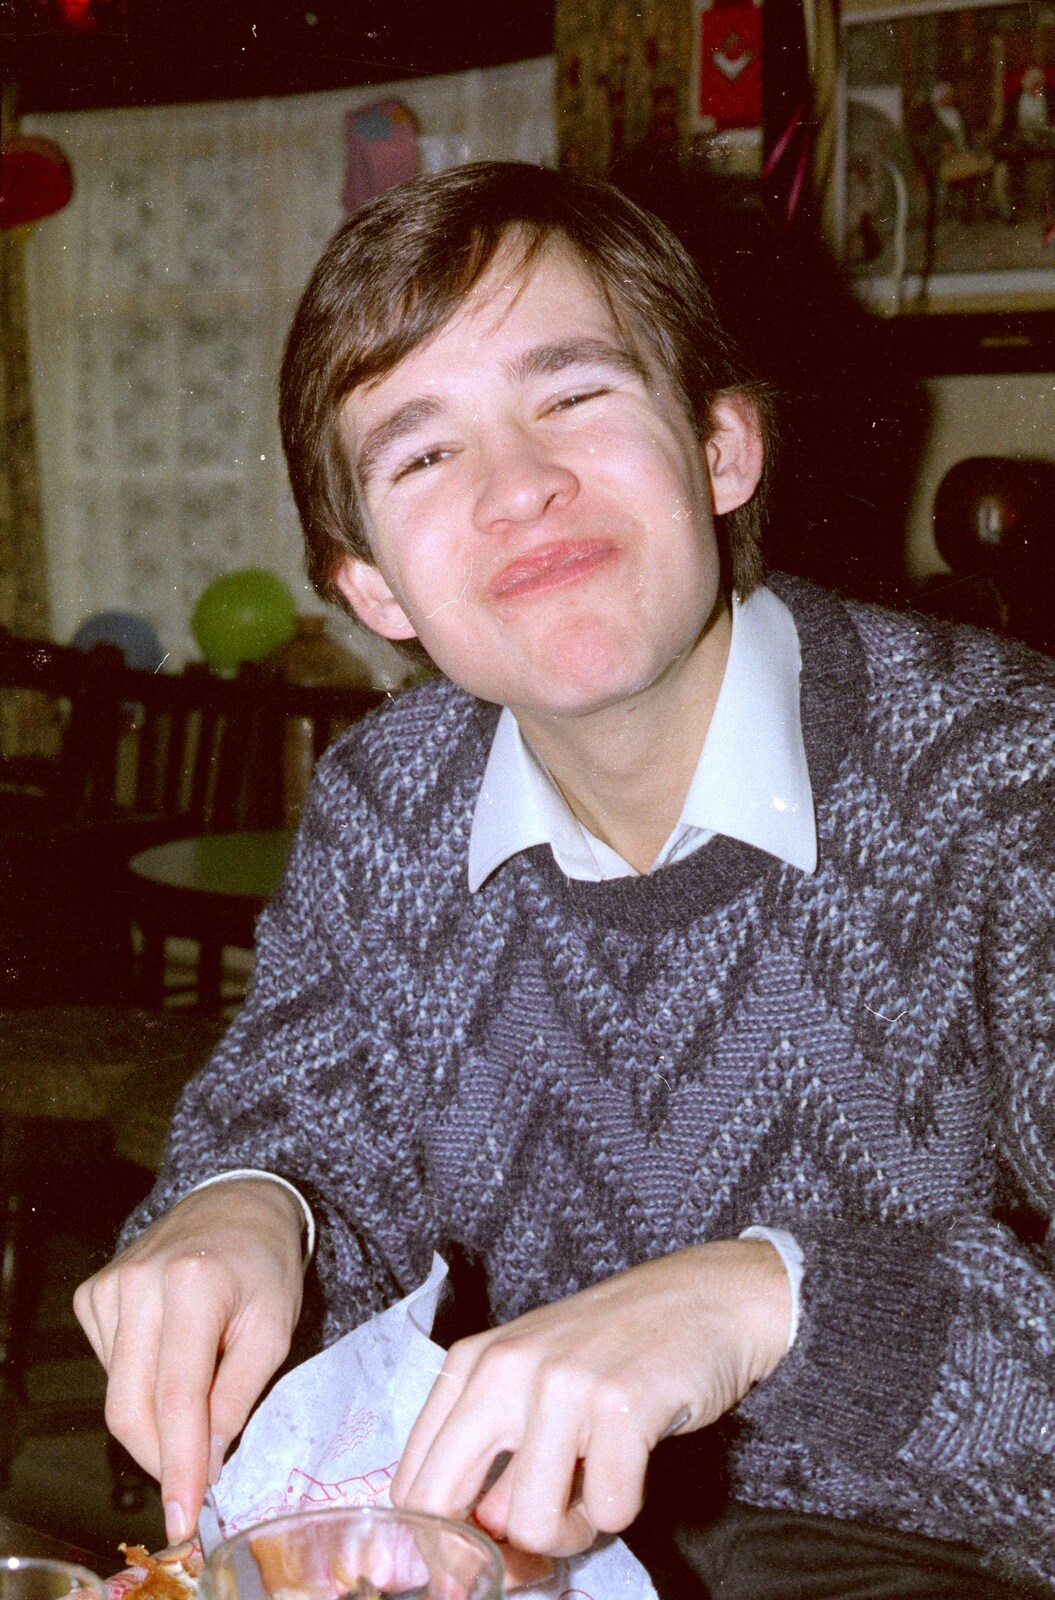 Phil pulls an odd face from A Bit of Bracken Way Pre-Christmas, Walkford, Dorset - 24th December 1986